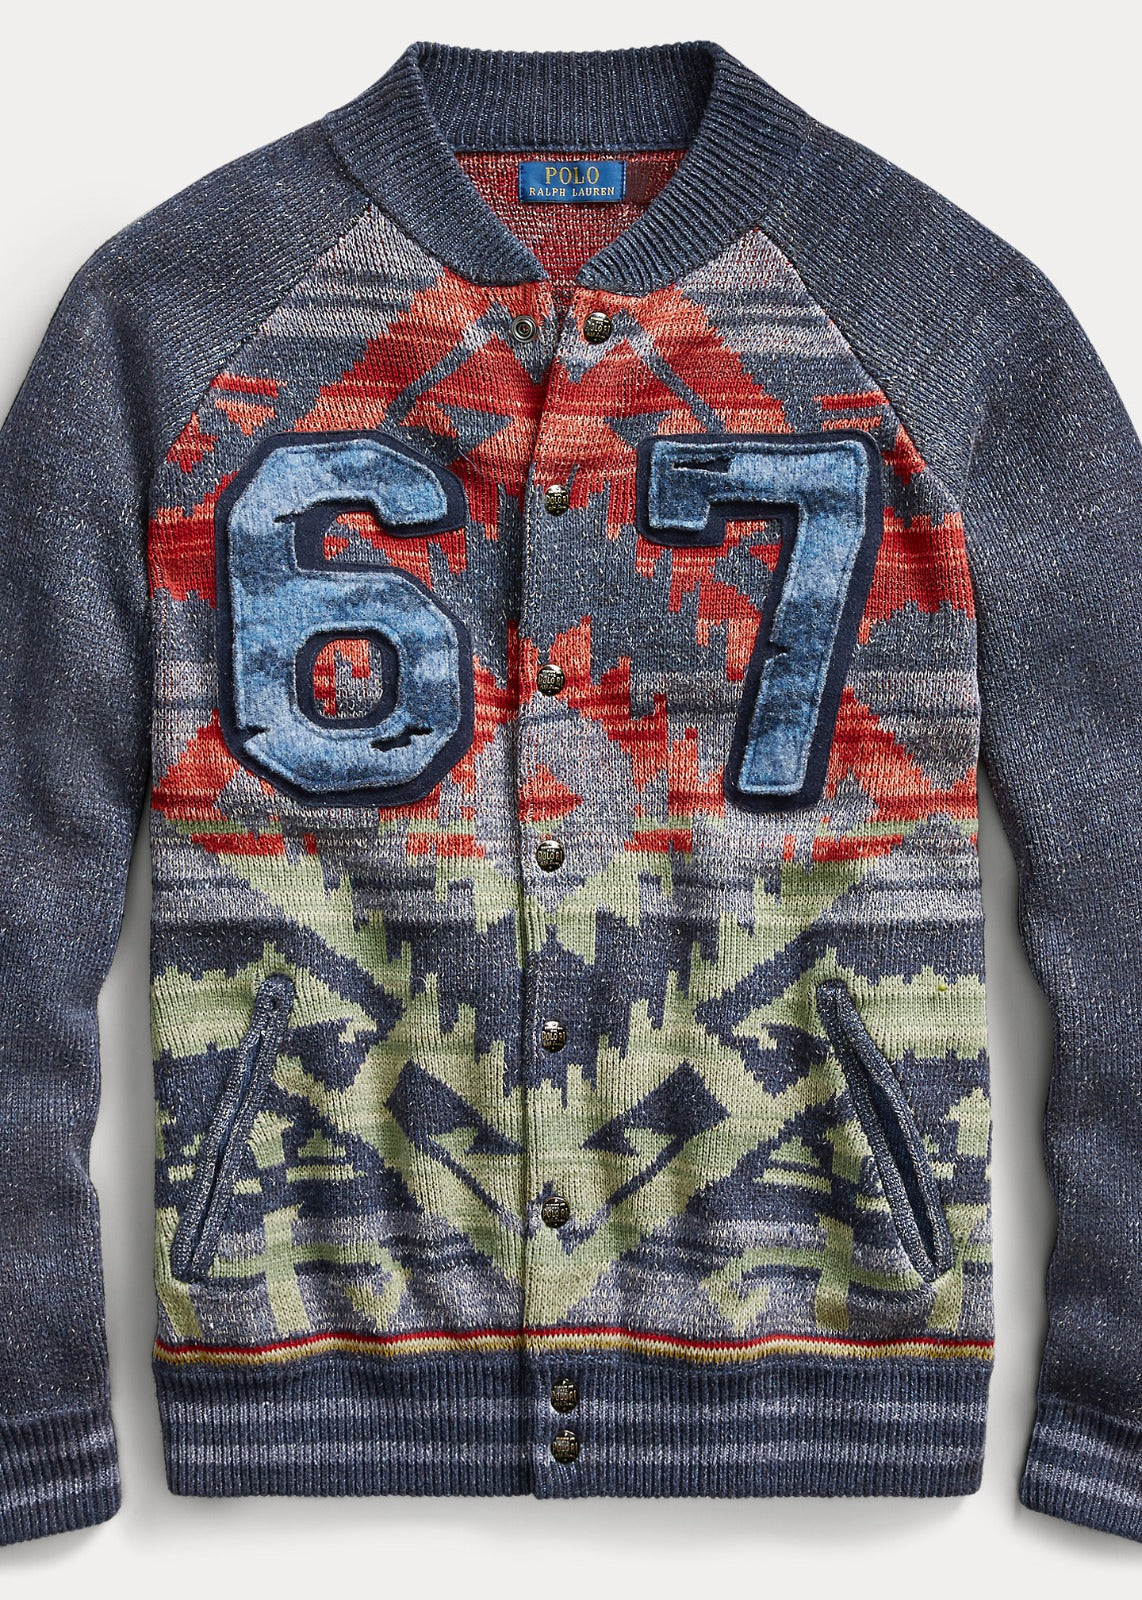 POLO RALPH LAUREN ‘67’ Sioux Star Knit Varsity Jacket Baseball Sweater NEW US L RALPH LAUREN